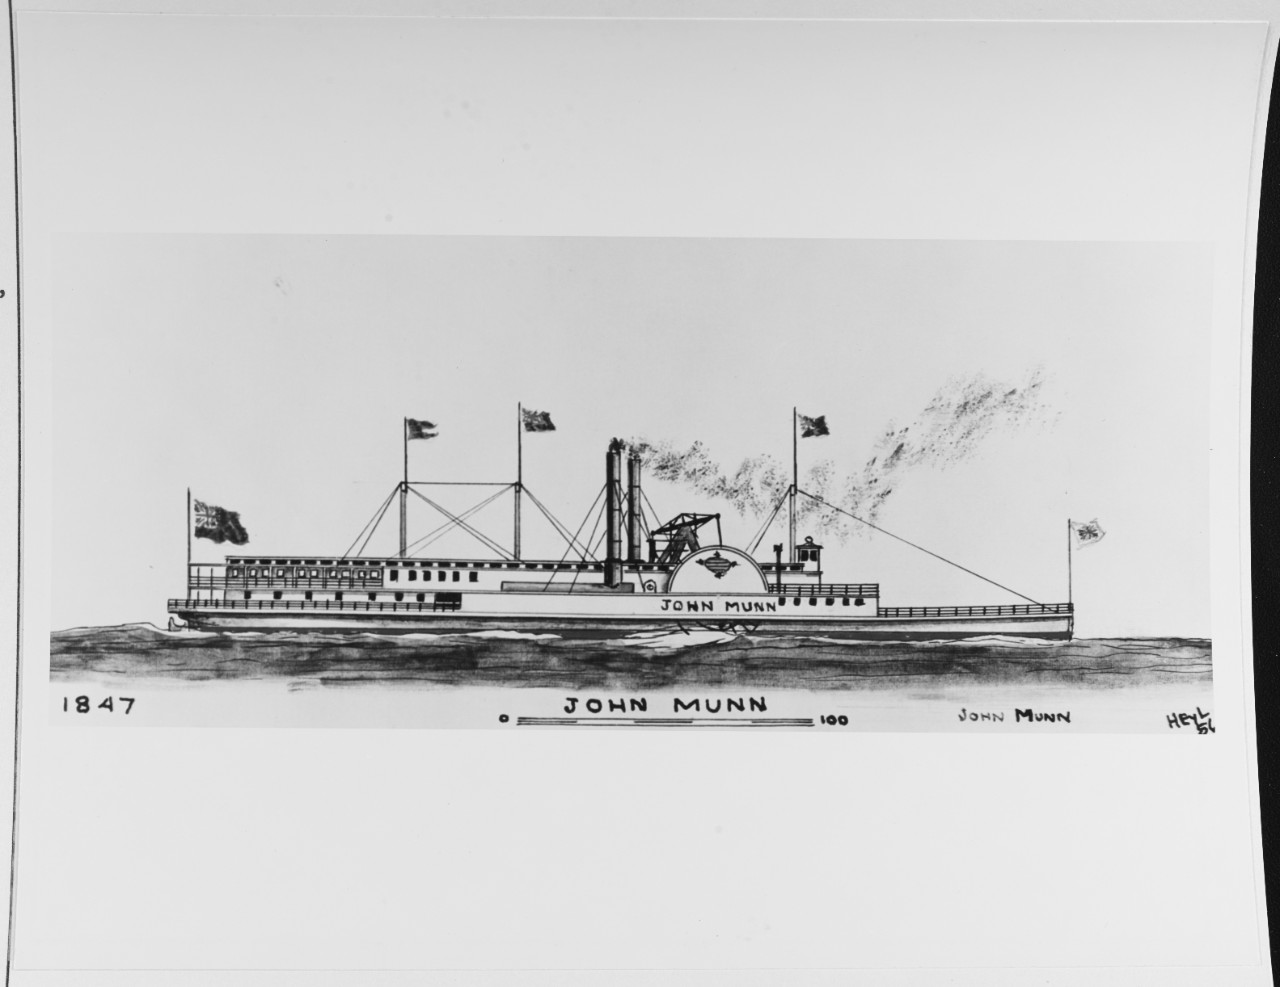 JOHN MUNN (Canadian merchant steamer, 1847-63)